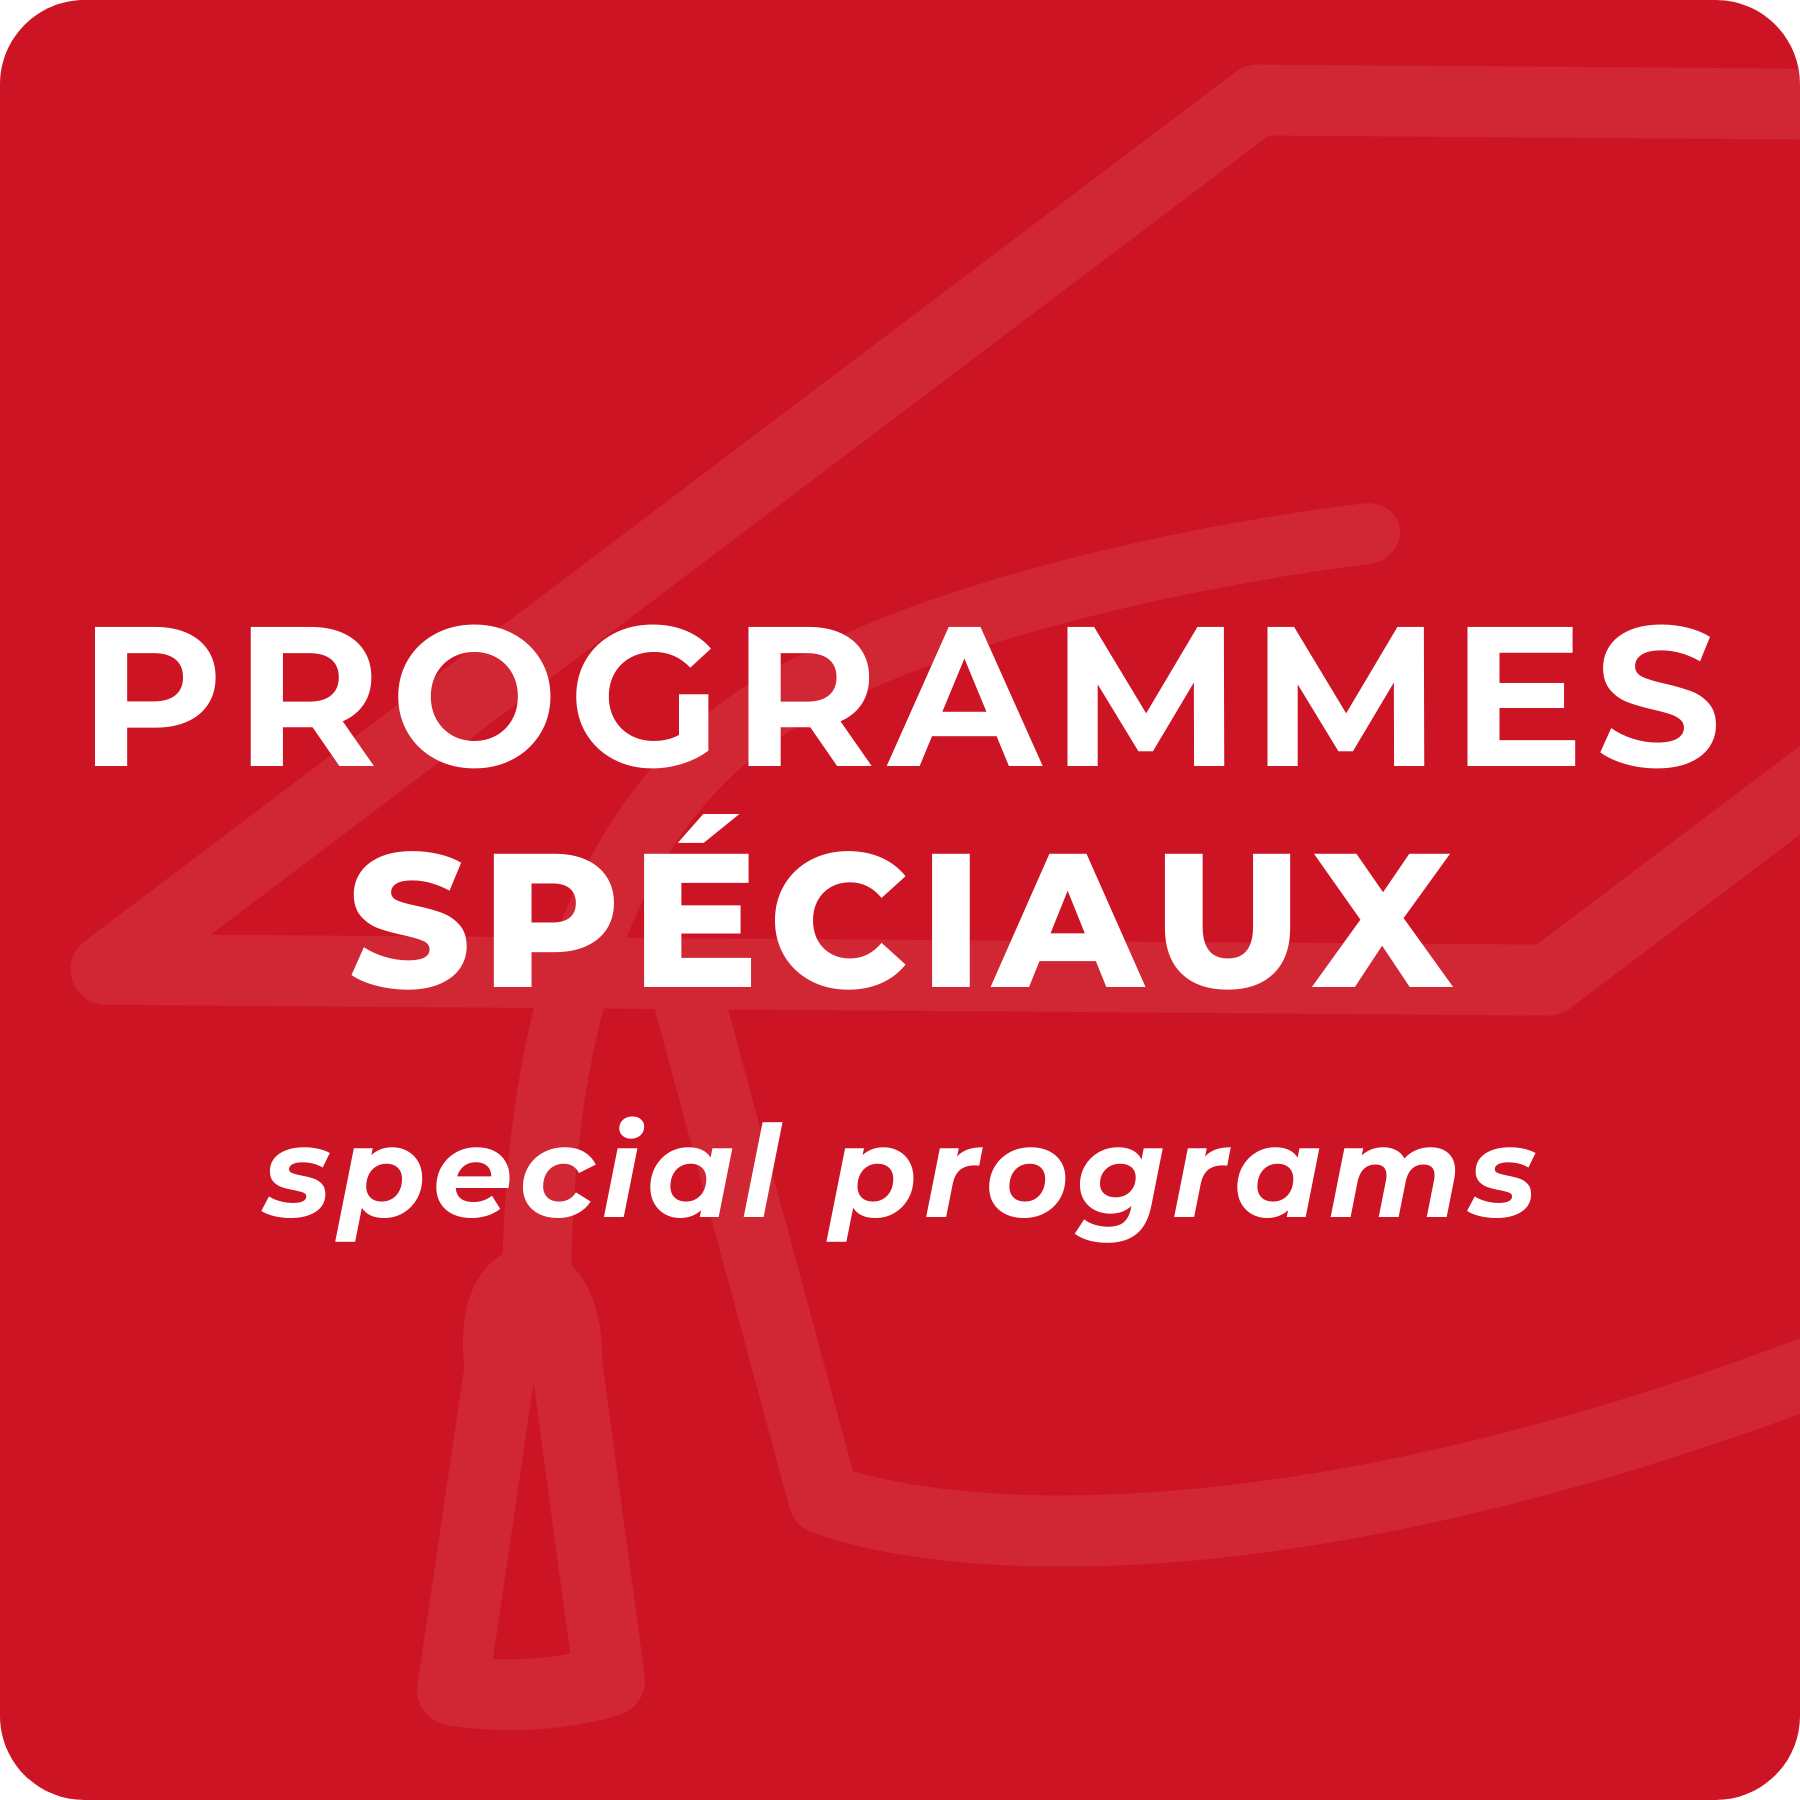 Special programs - Snow